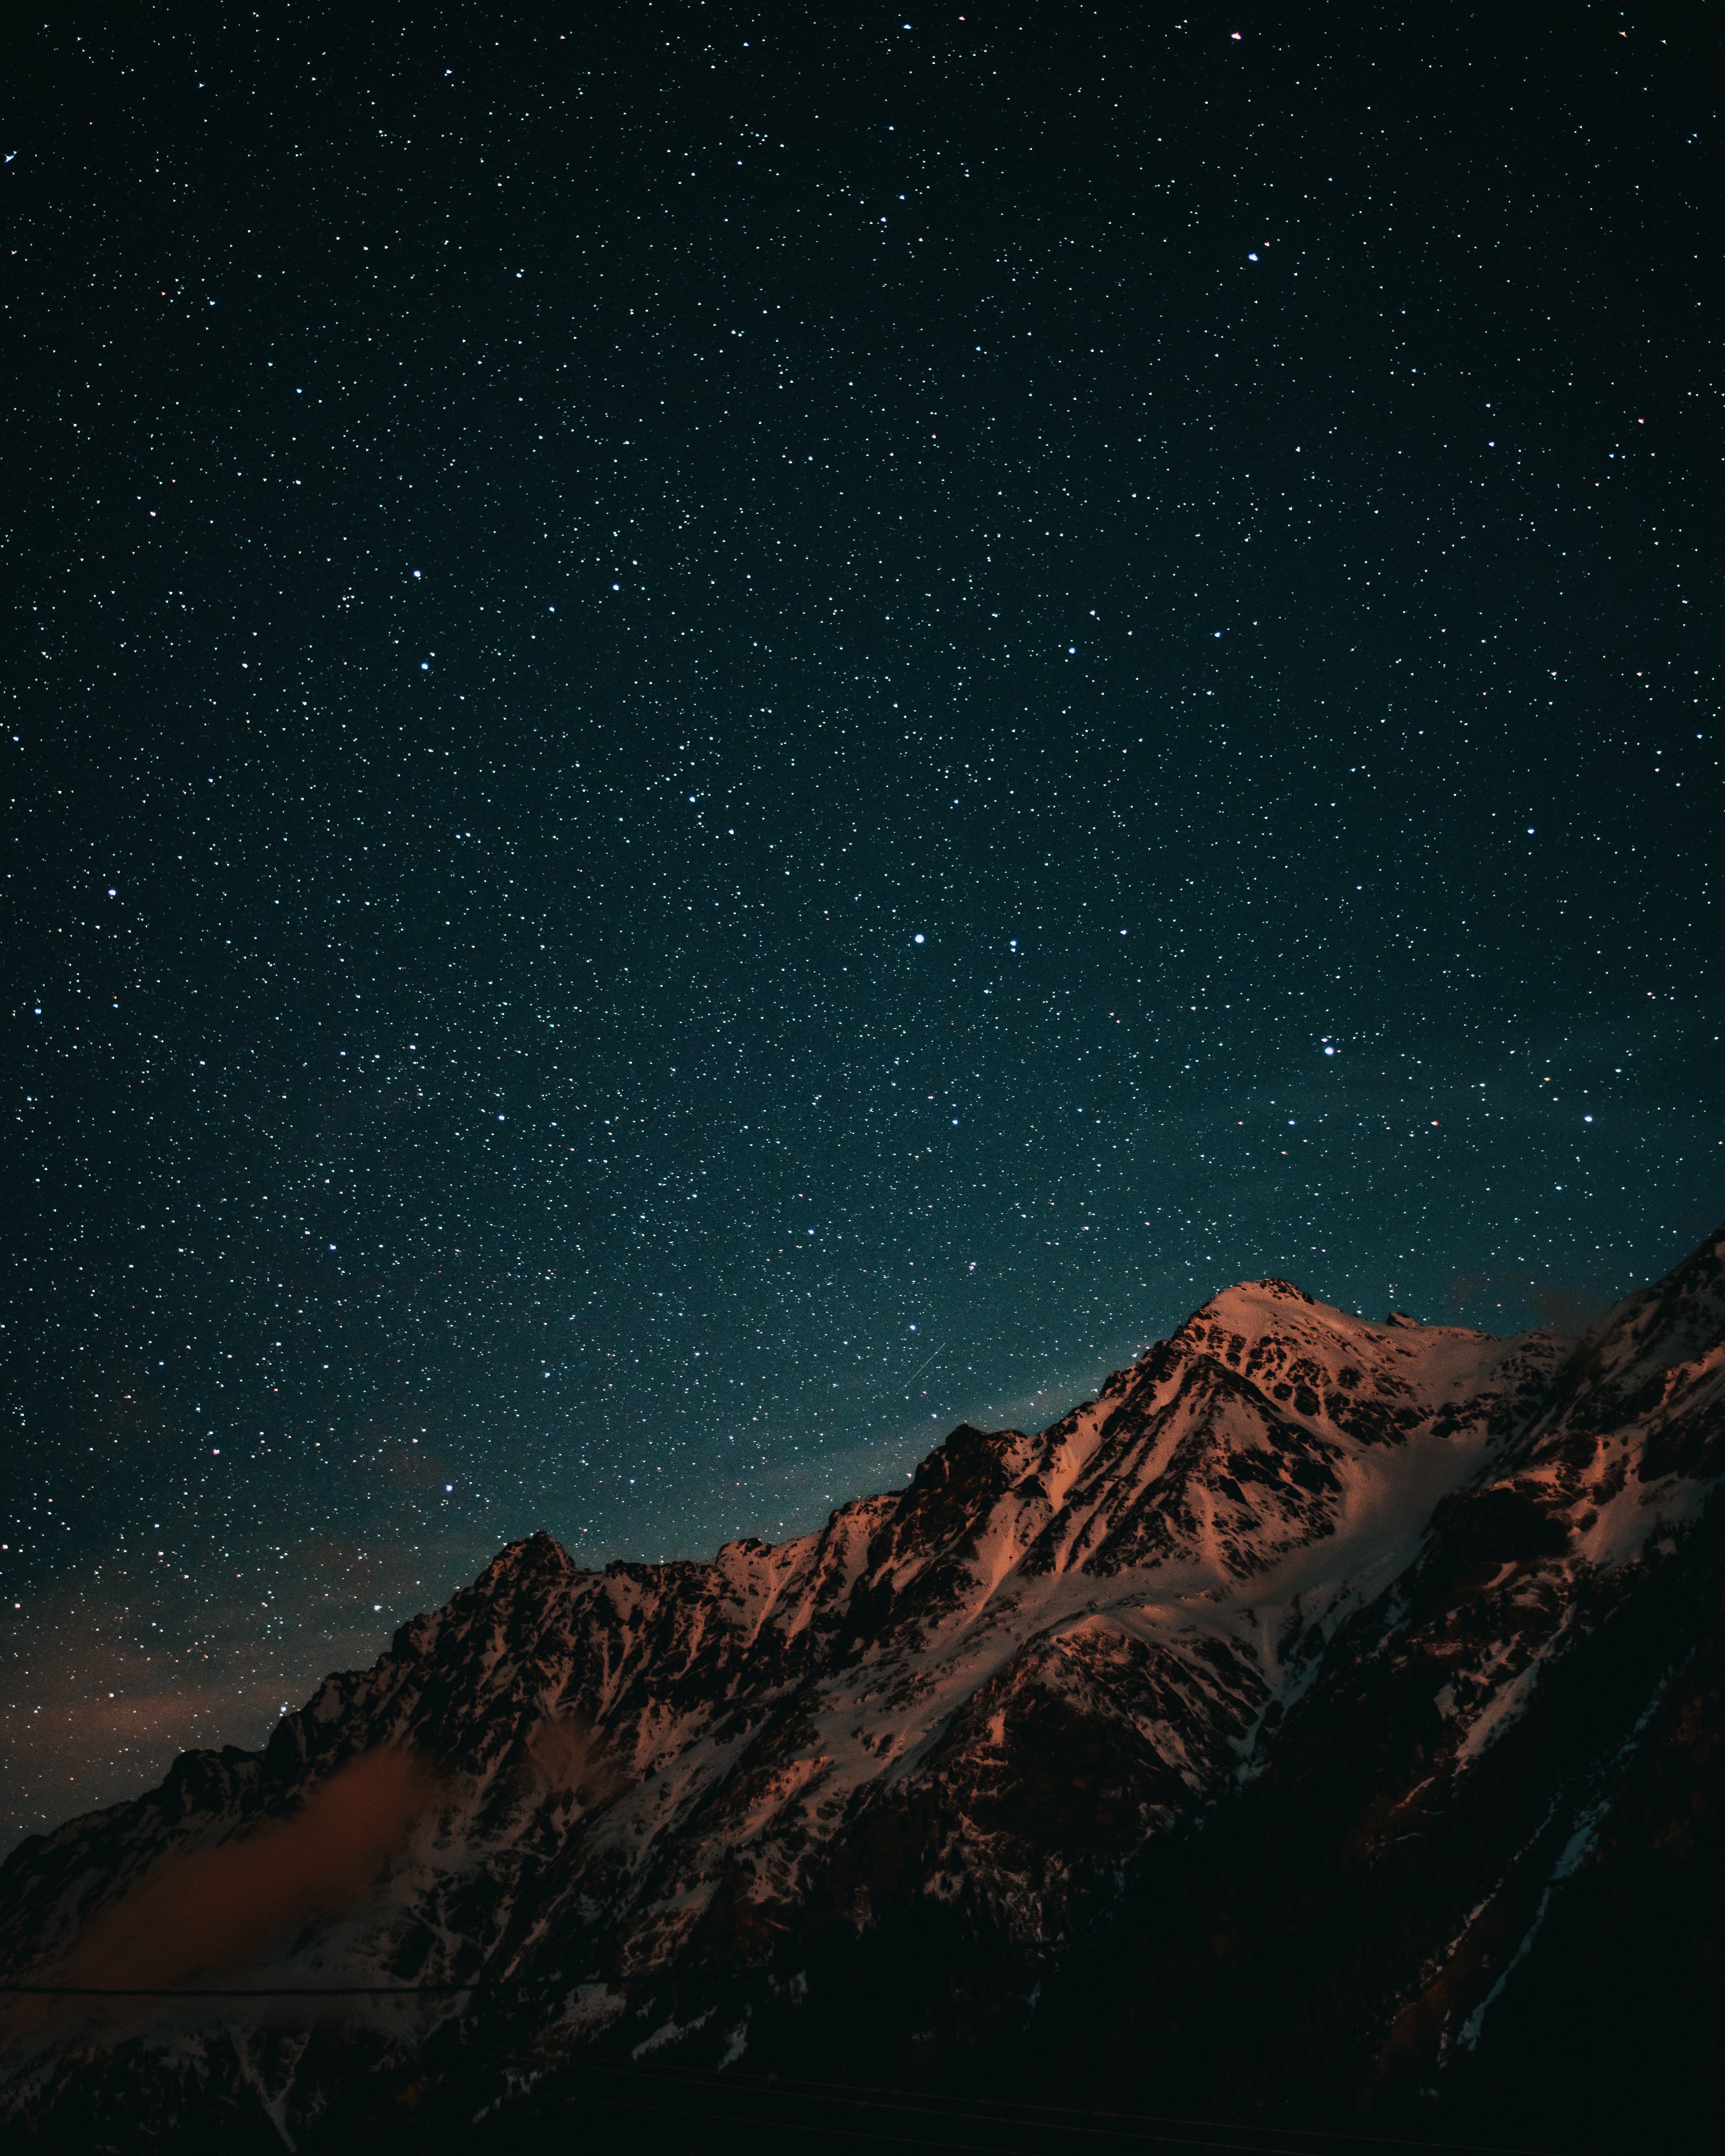 Mountain In Night